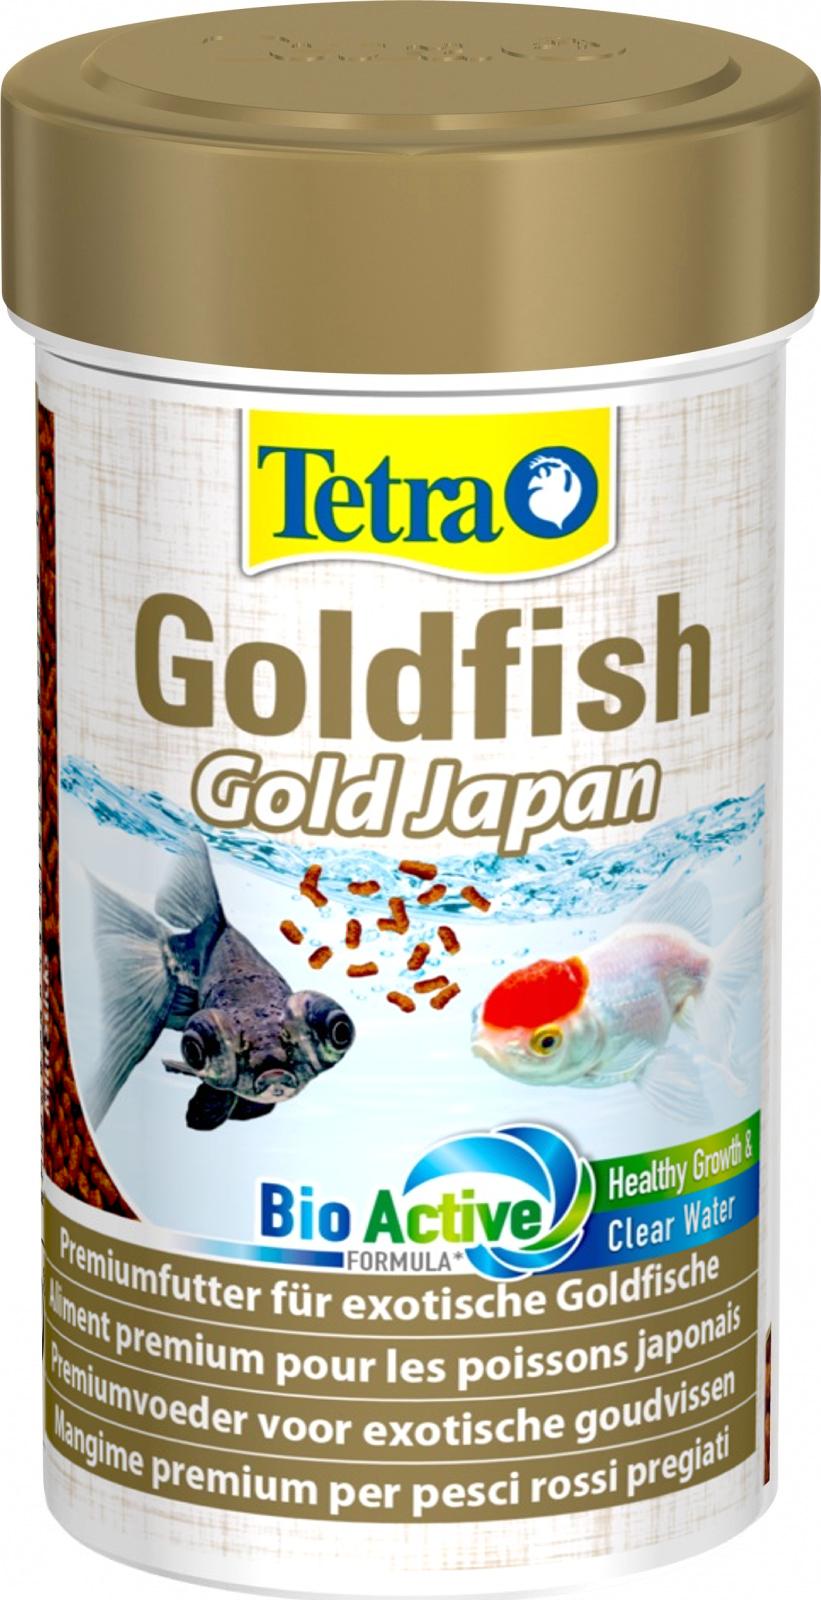 TETRA Cory ShrimpWafers 250 ml nourriture complète spéciale Corydoras et  autres poissons de fond - Nourritures eau douce/Nourriture pour poissons de  fond -  - Aquariophilie